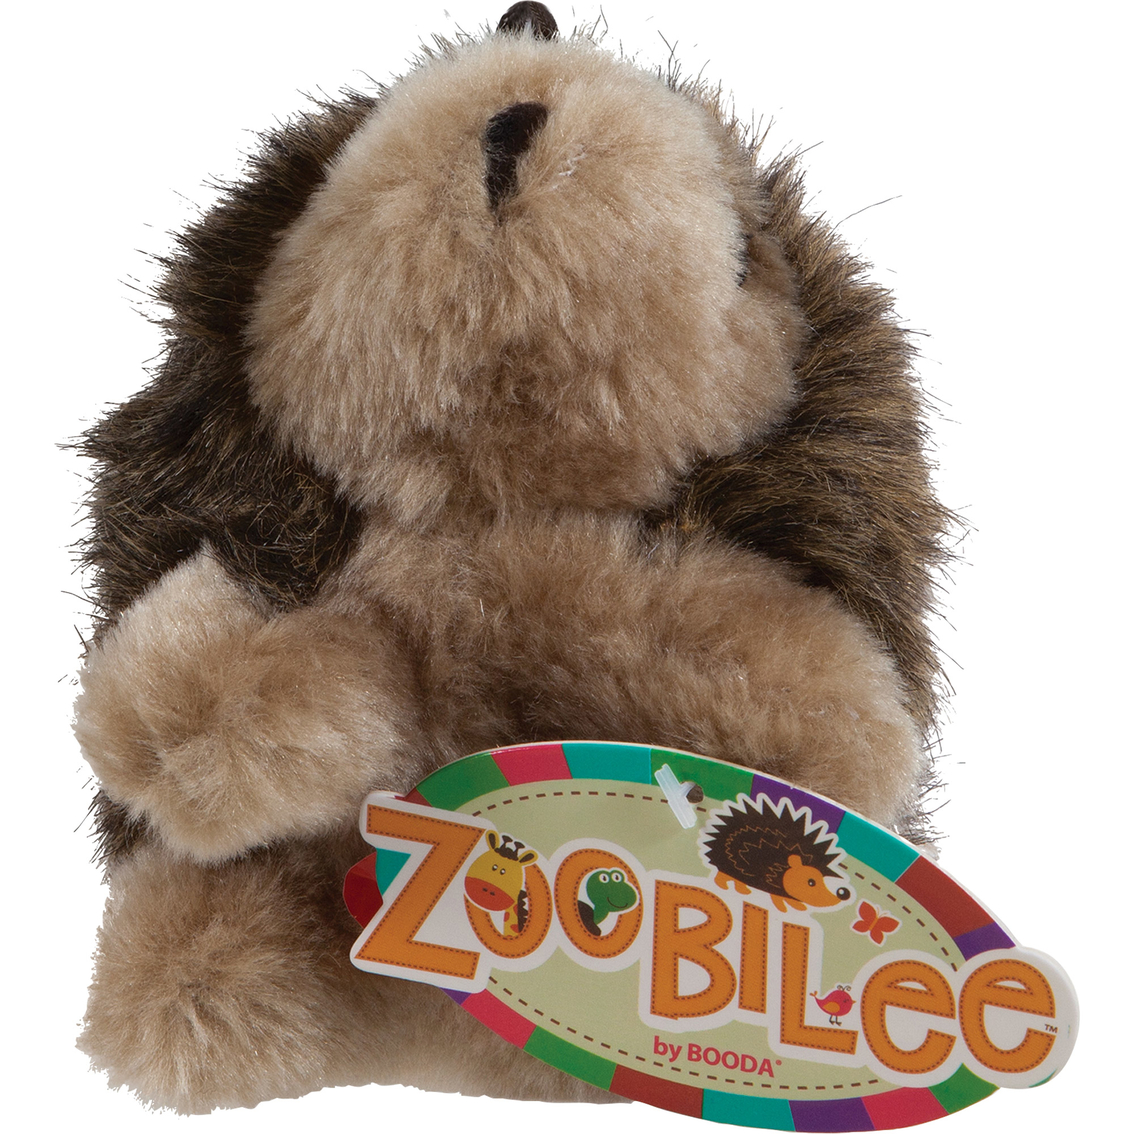 Petmate Zoobilee Plush Large Hedgehog Dog Toy - Image 1 of 2